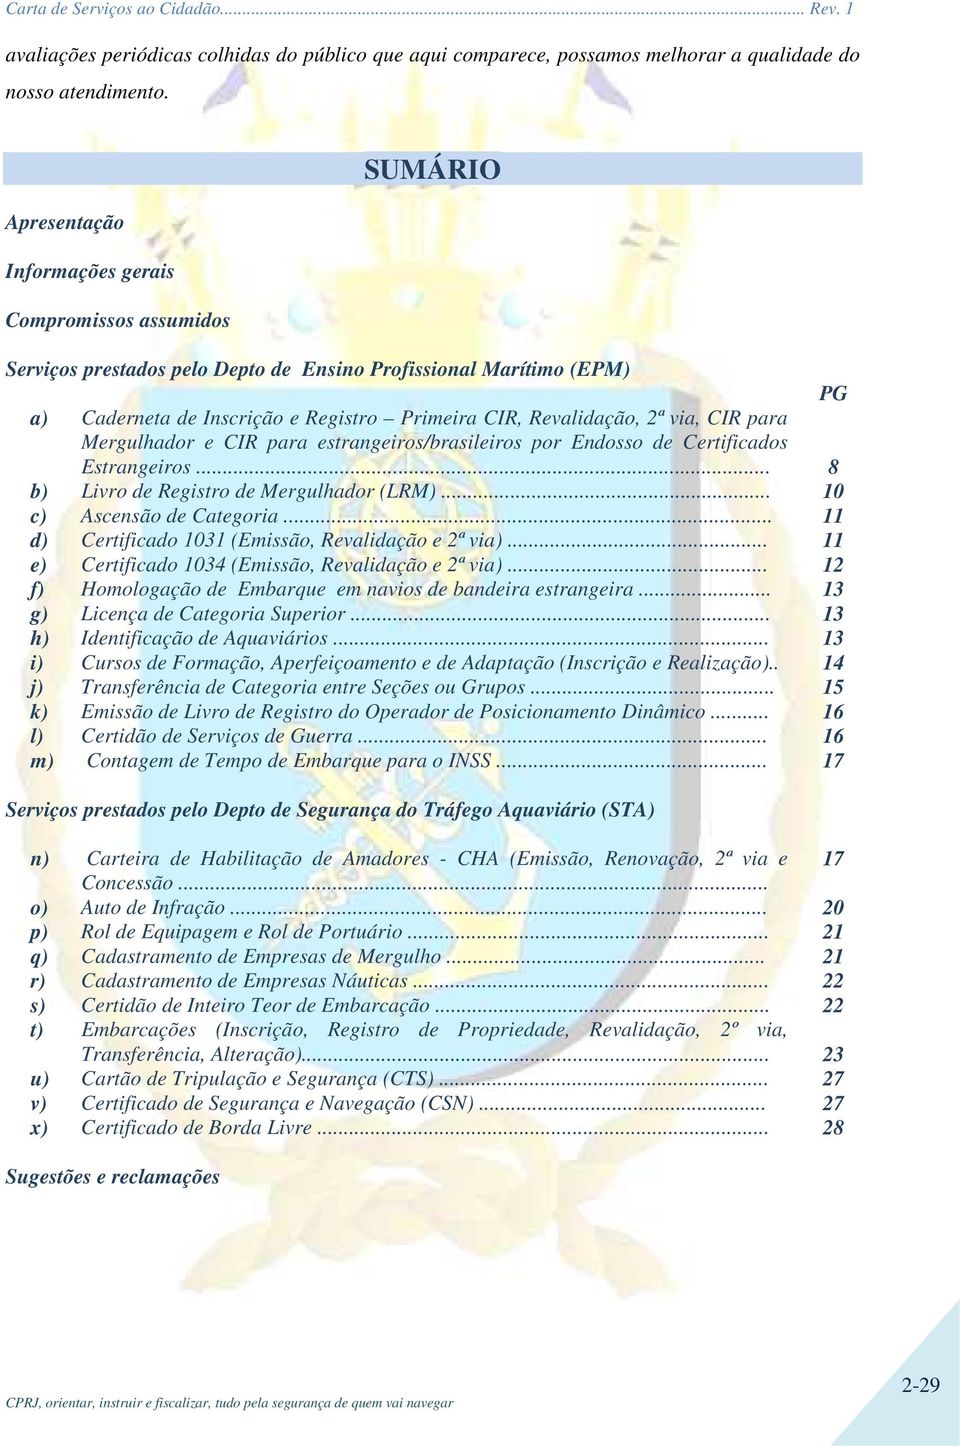 2ª via, CIR para Mergulhador e CIR para estrangeiros/brasileiros por Endosso de Certificados Estrangeiros... 8 b) Livro de Registro de Mergulhador (LRM)... 10 c) Ascensão de Categoria.